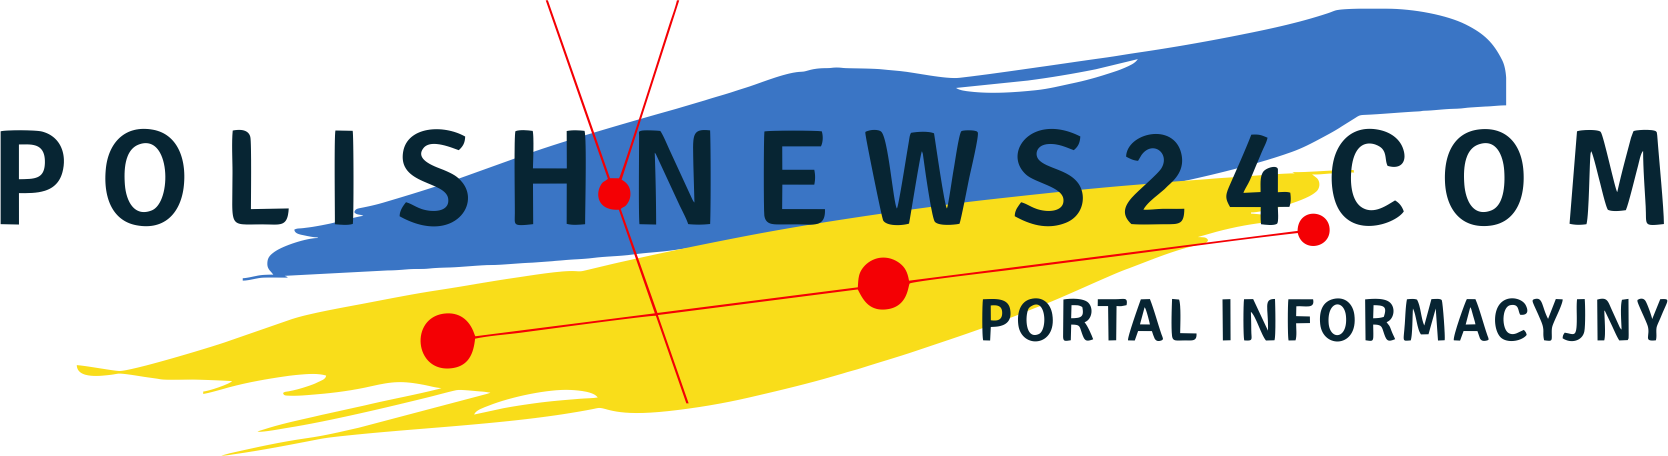 Polski, informacyjny portal polonijny Polish News 24 .com